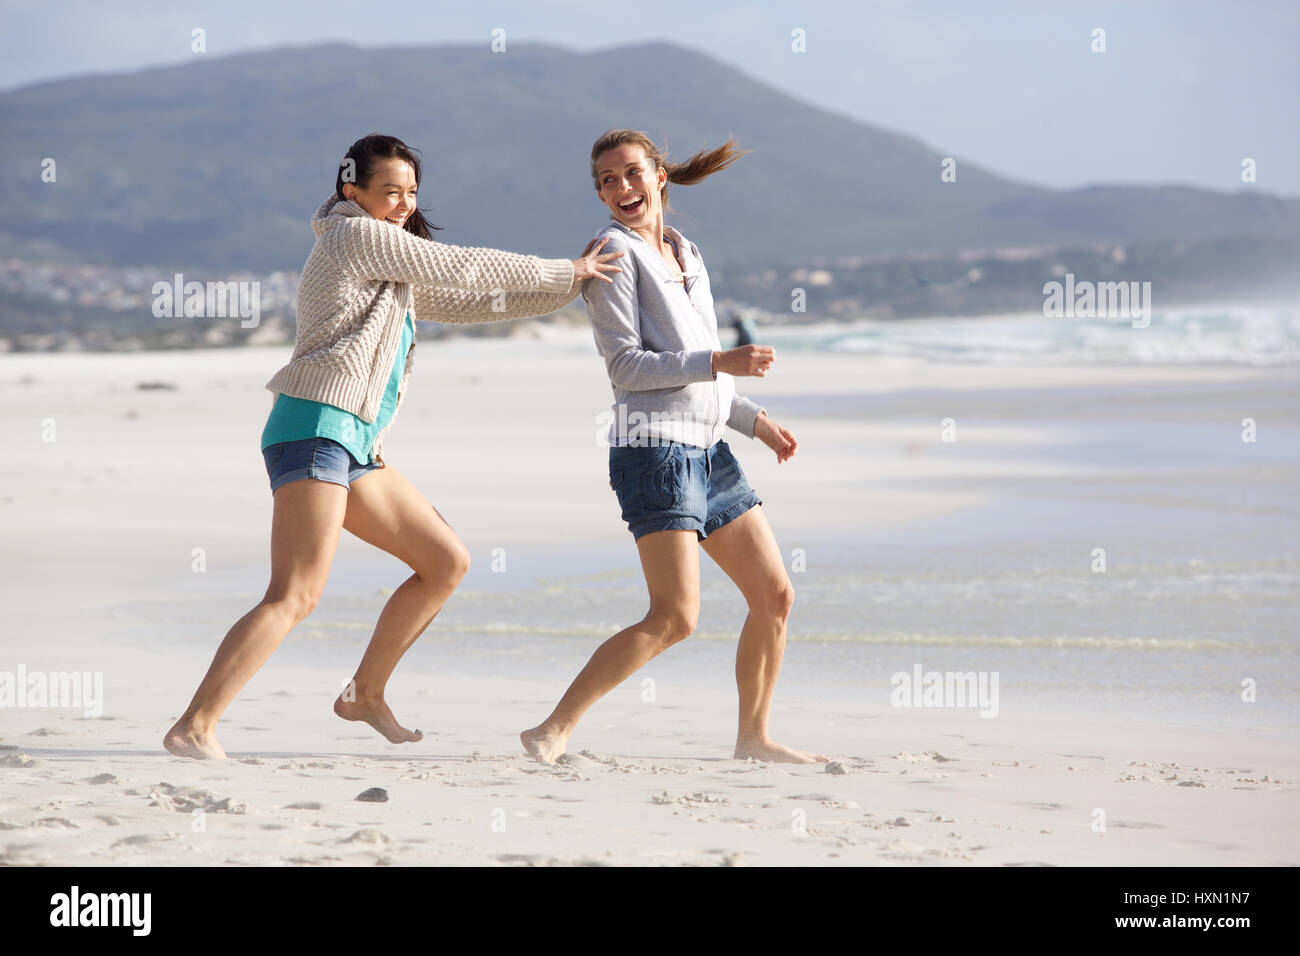 Portrait de deux amies, jouer sur la plage Banque D'Images